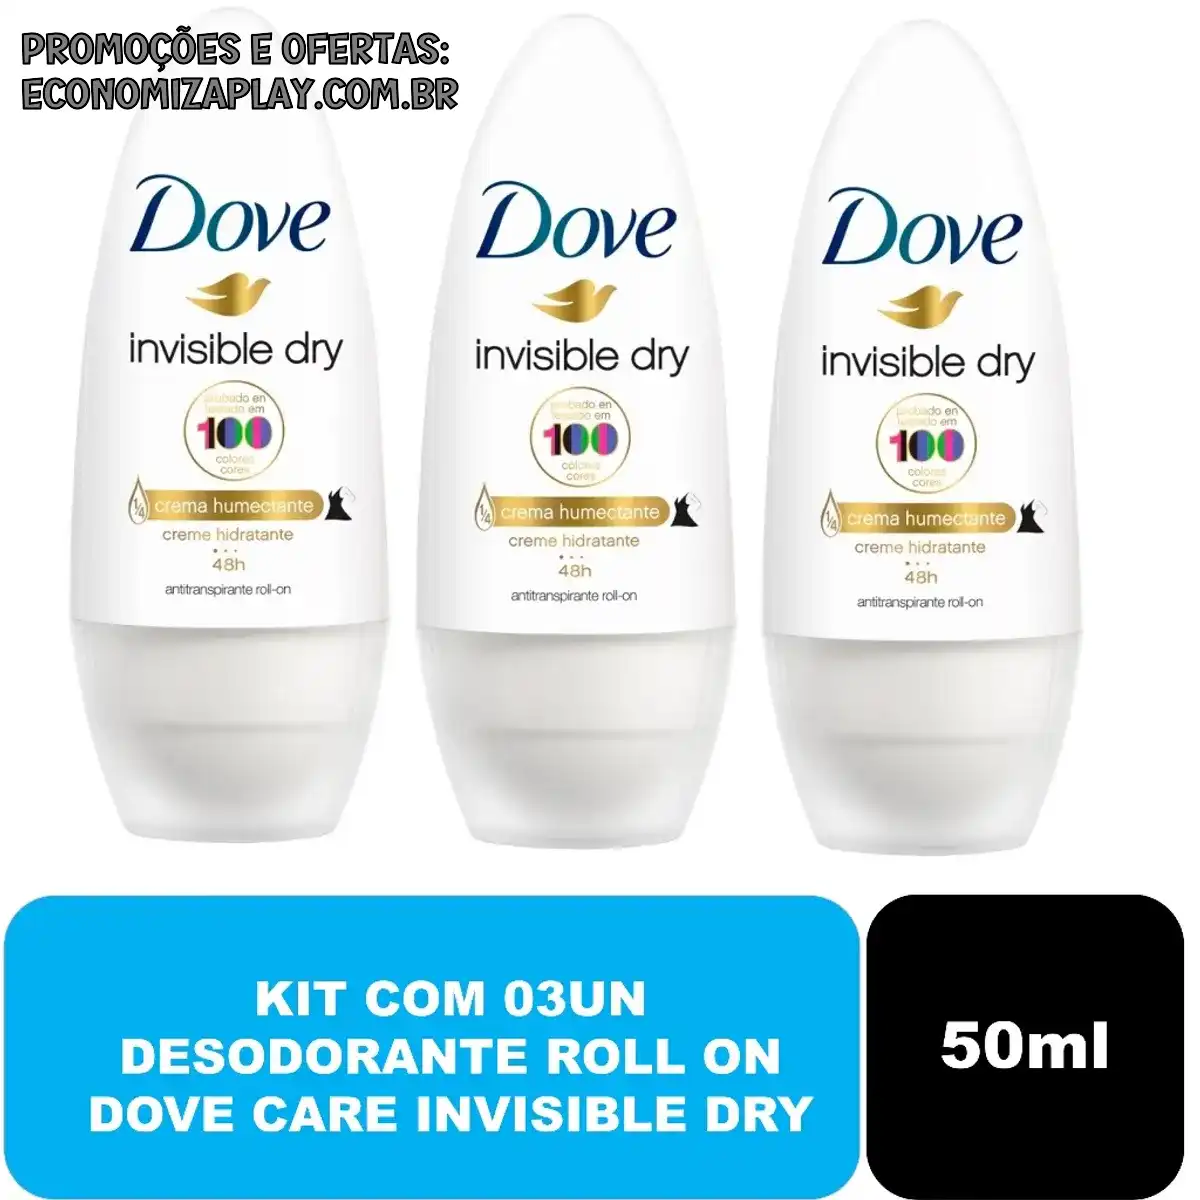 Kit com 03un Desodorante Roll On Dove Care Invisible Dry 50ml